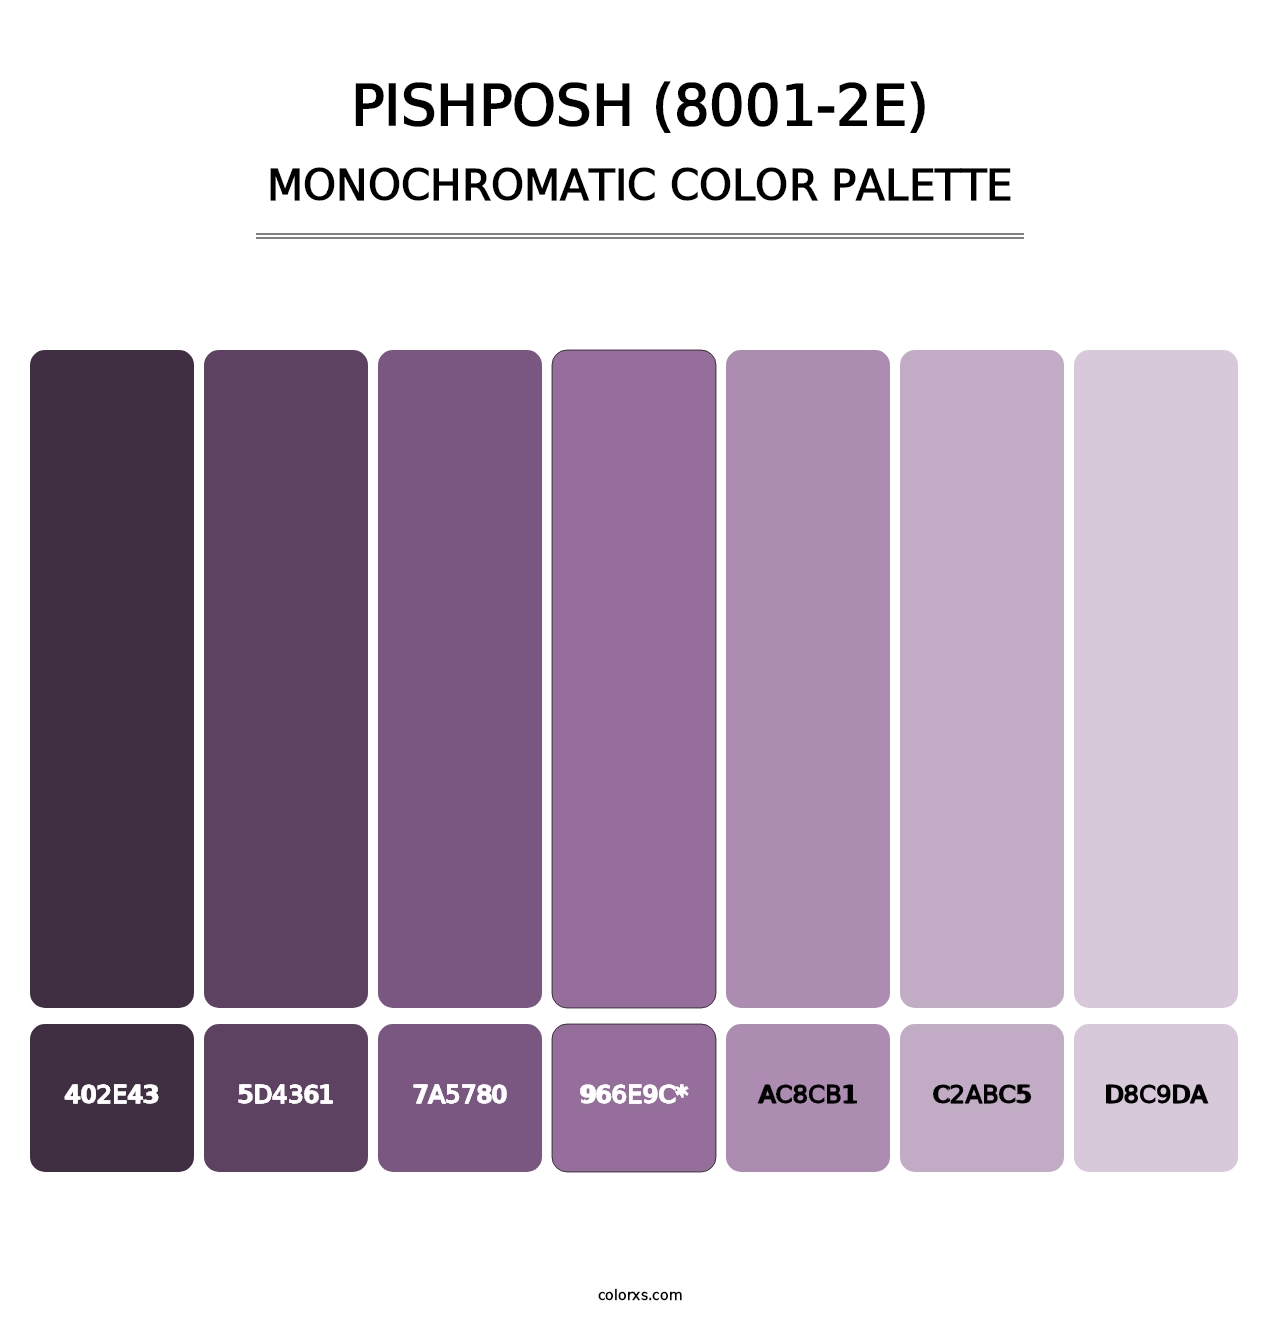 Pishposh (8001-2E) - Monochromatic Color Palette